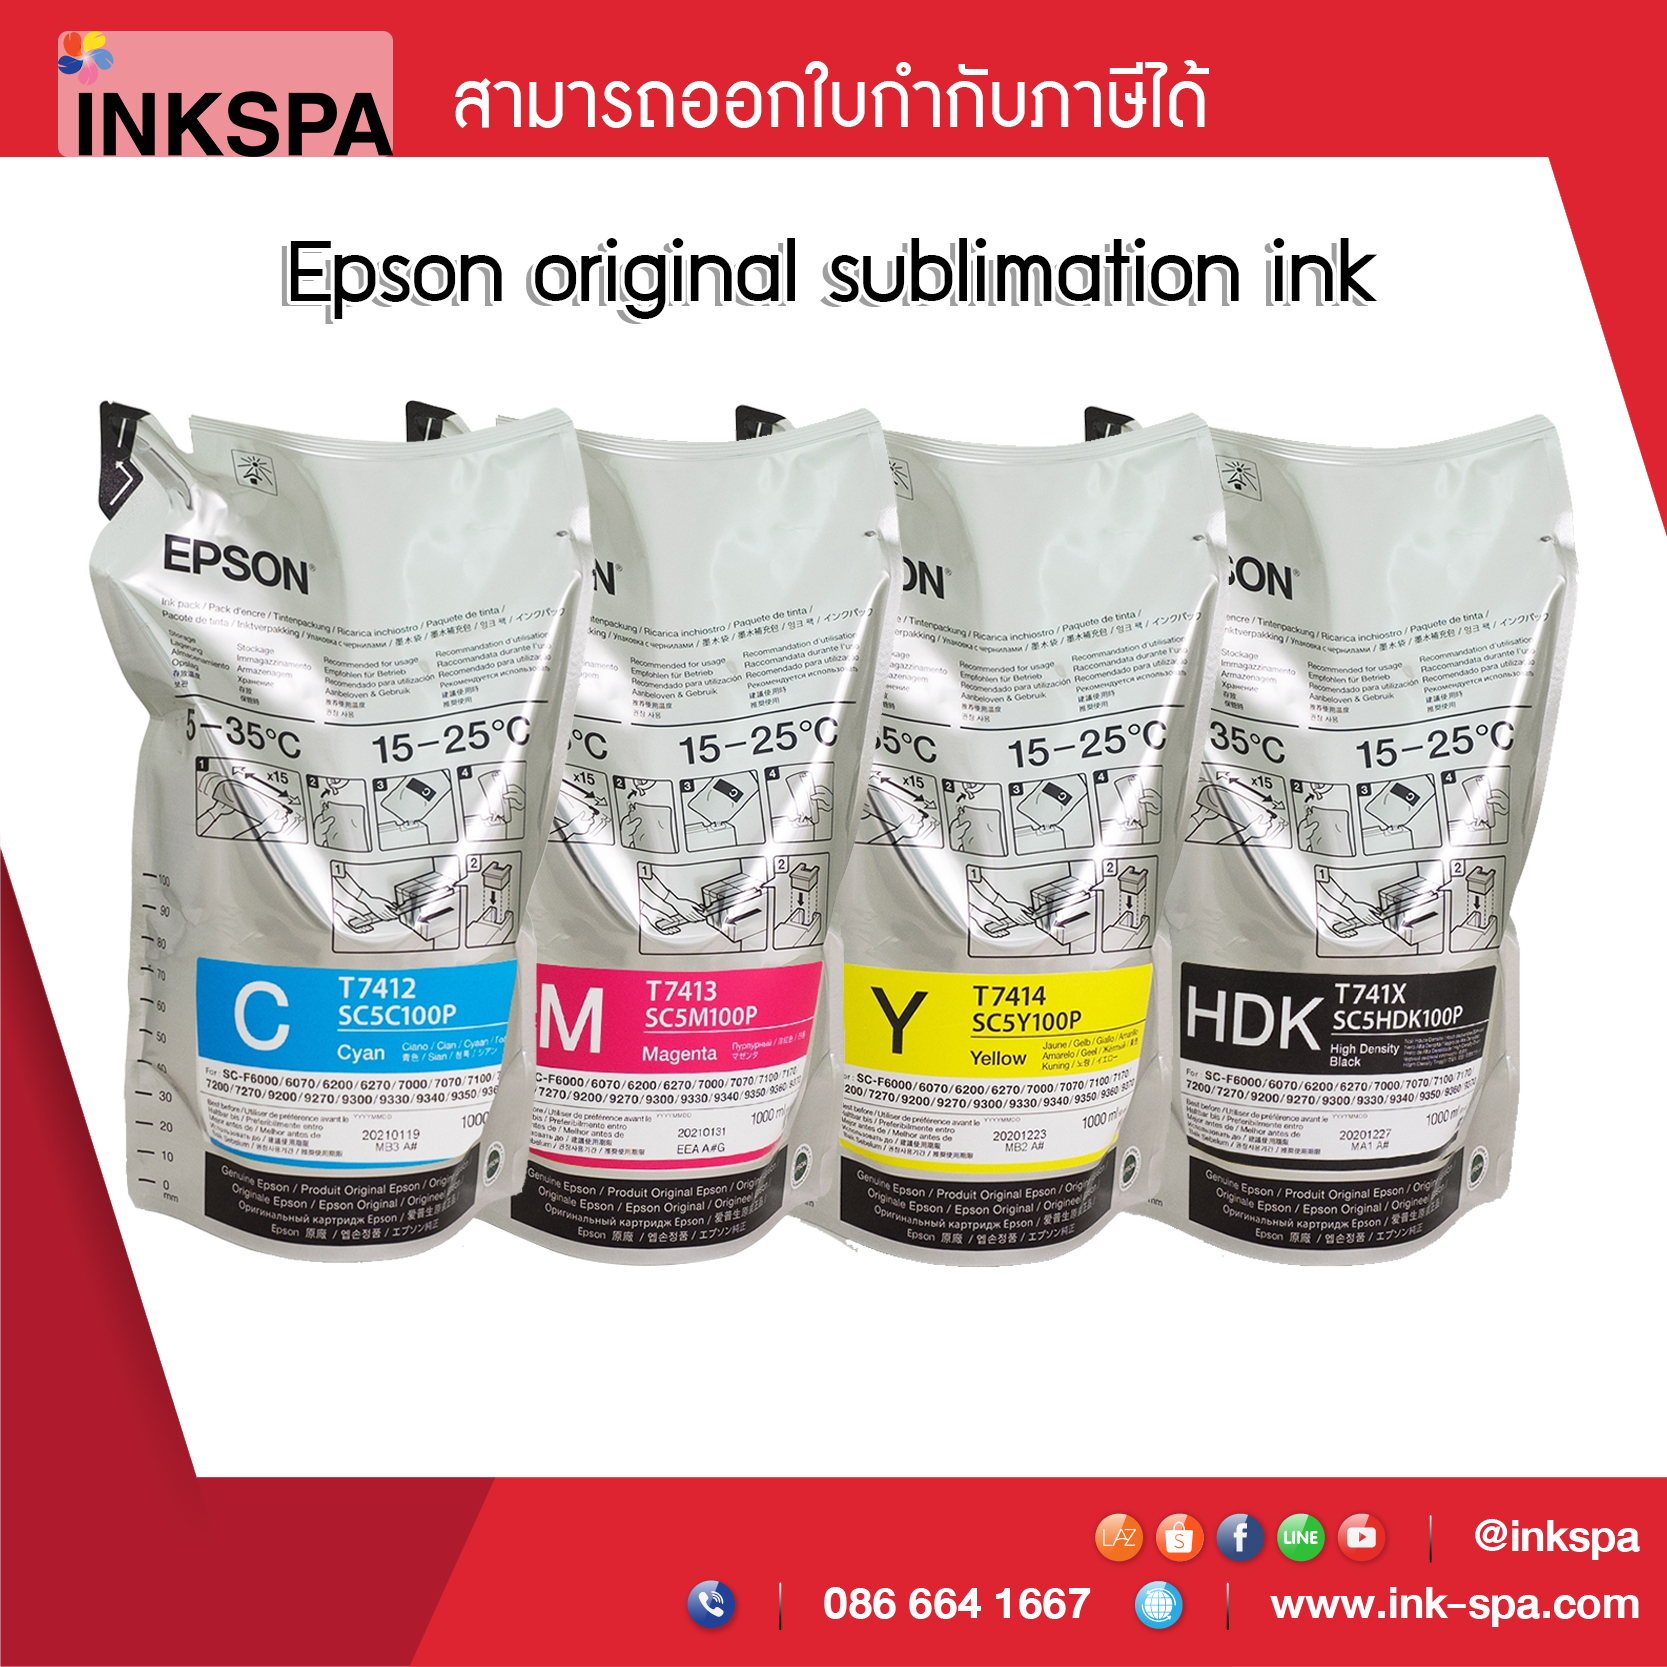 หมึกพิมพ์ Epson original sublimation ink หมึกพิมพ์สำหรับงานซับลิเมชั่น งานสกรีนผ้า Epson